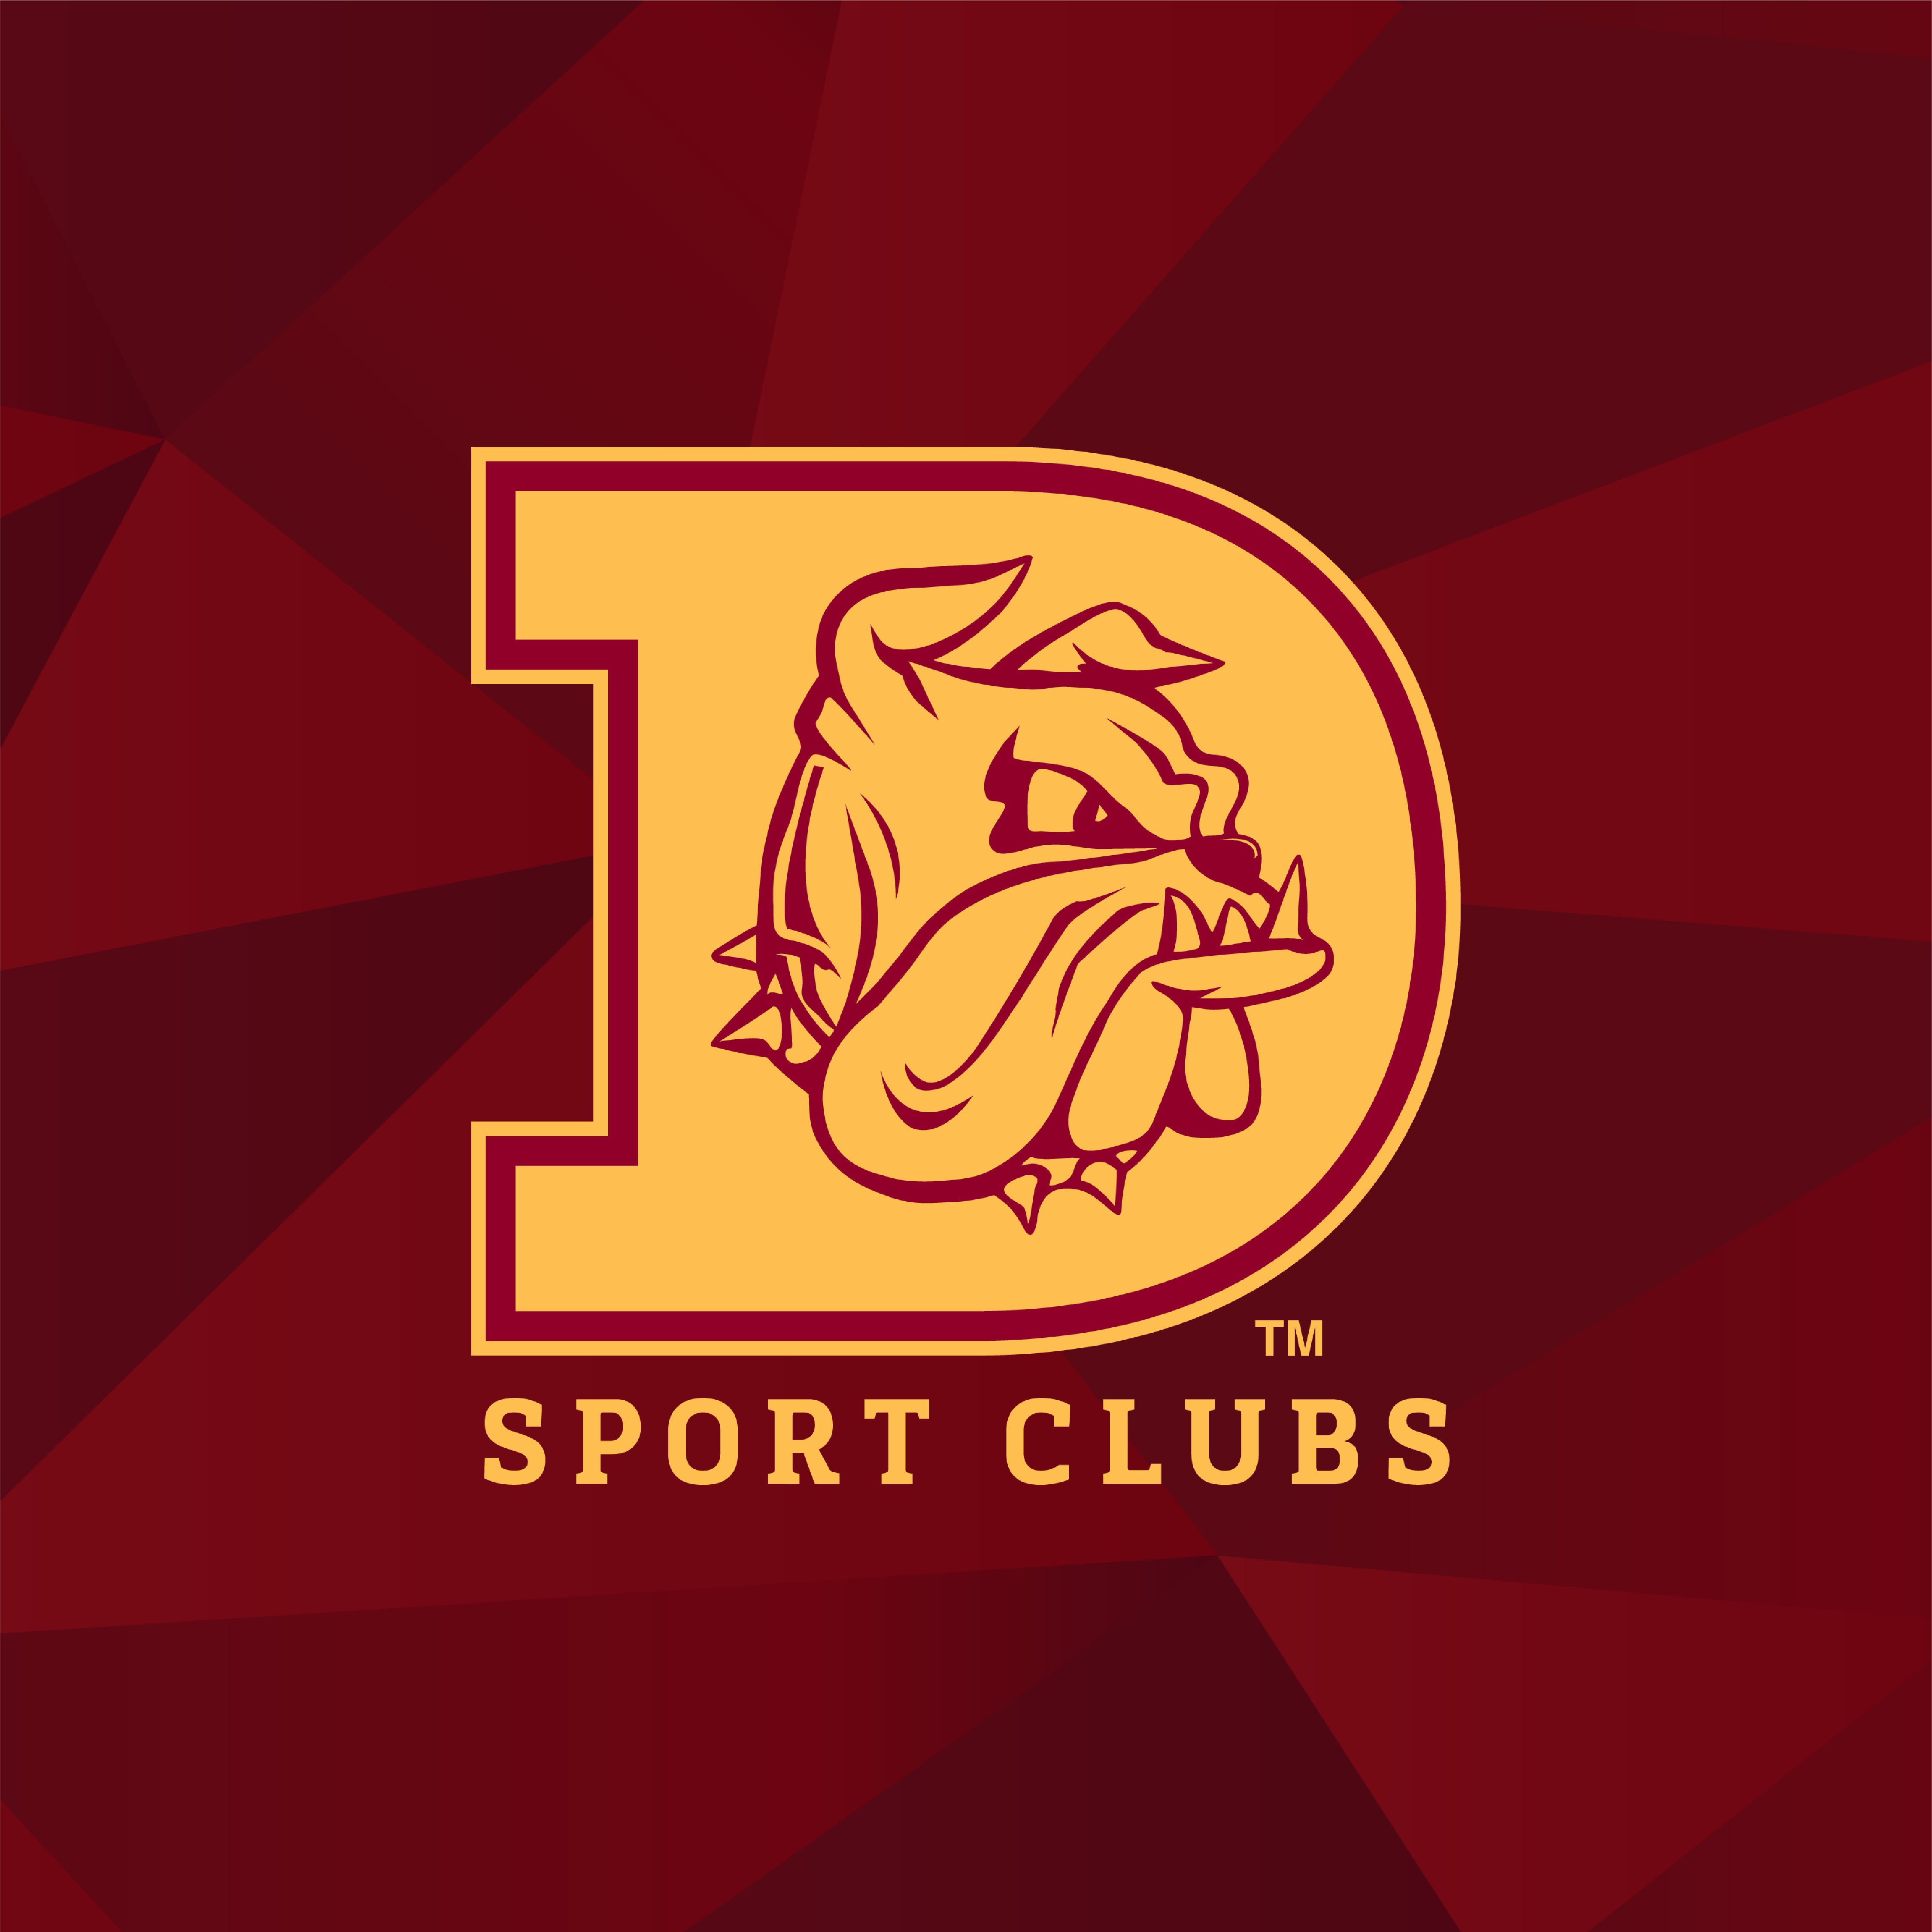 UMD Sport Clubs